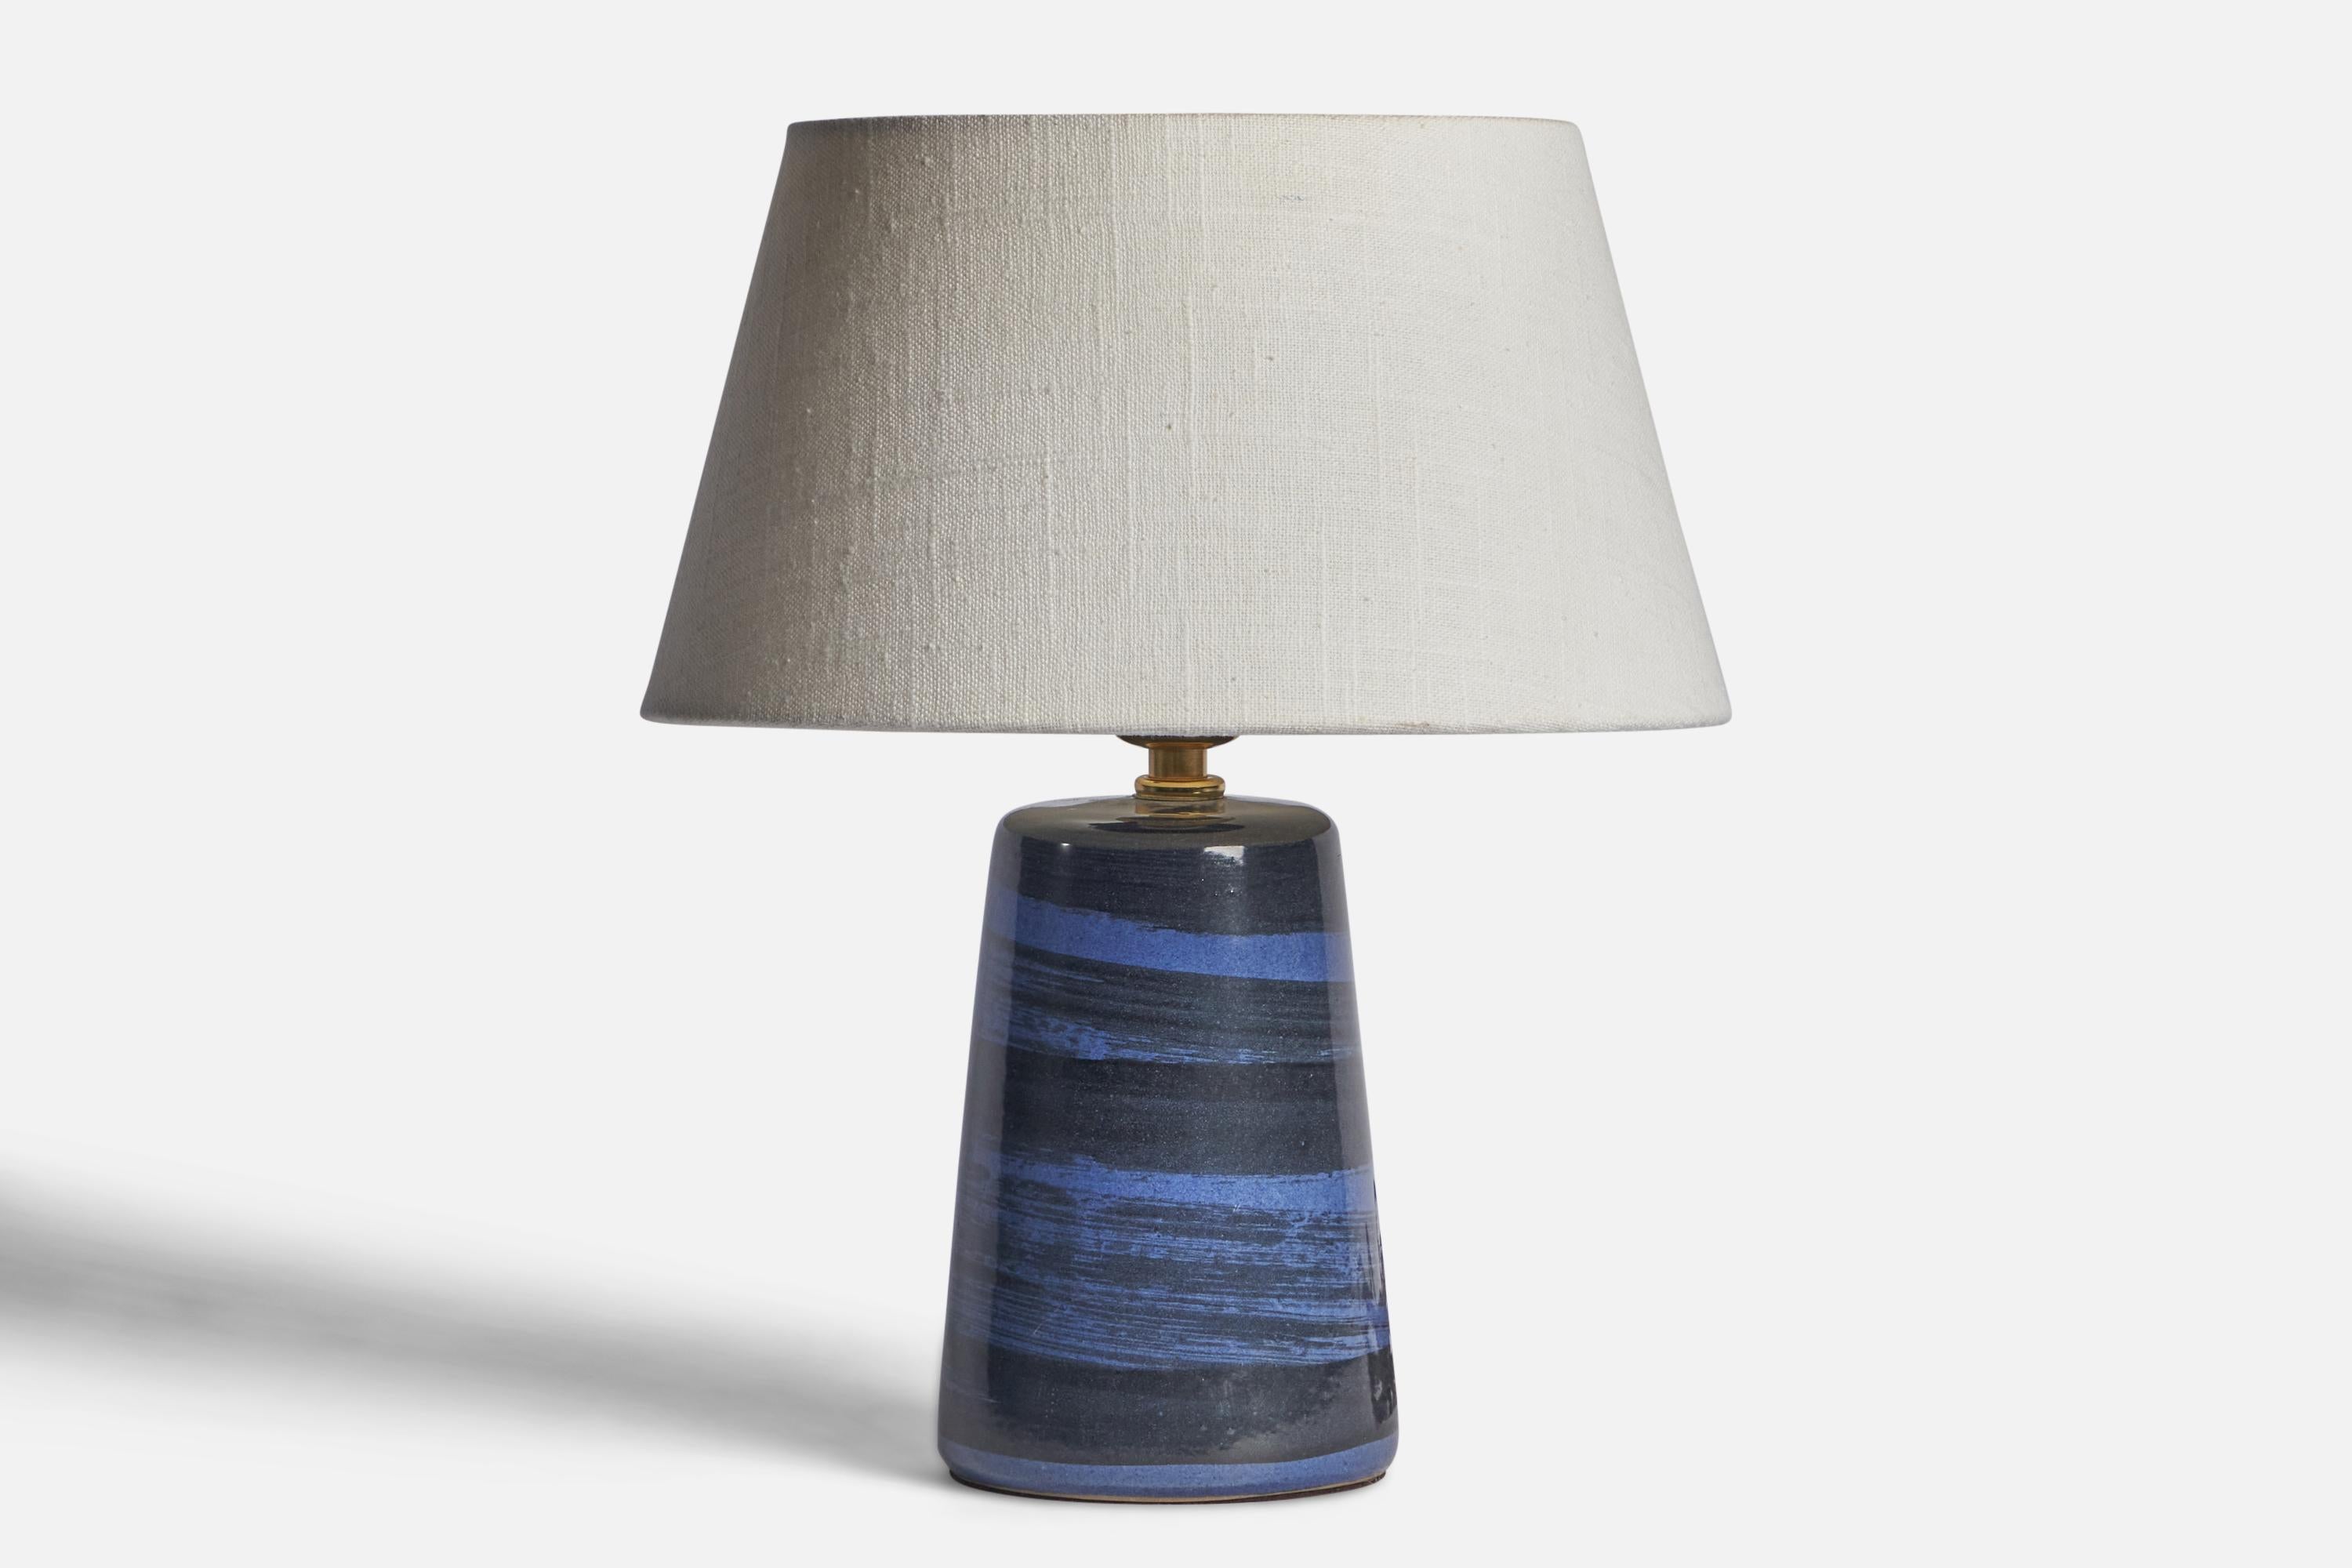 Lampe de table en céramique émaillée bleue conçue par Jane & Gordon Martz et produite par Marshall Studios, États-Unis, années 1960.

Dimensions de la lampe (pouces) : 9.15